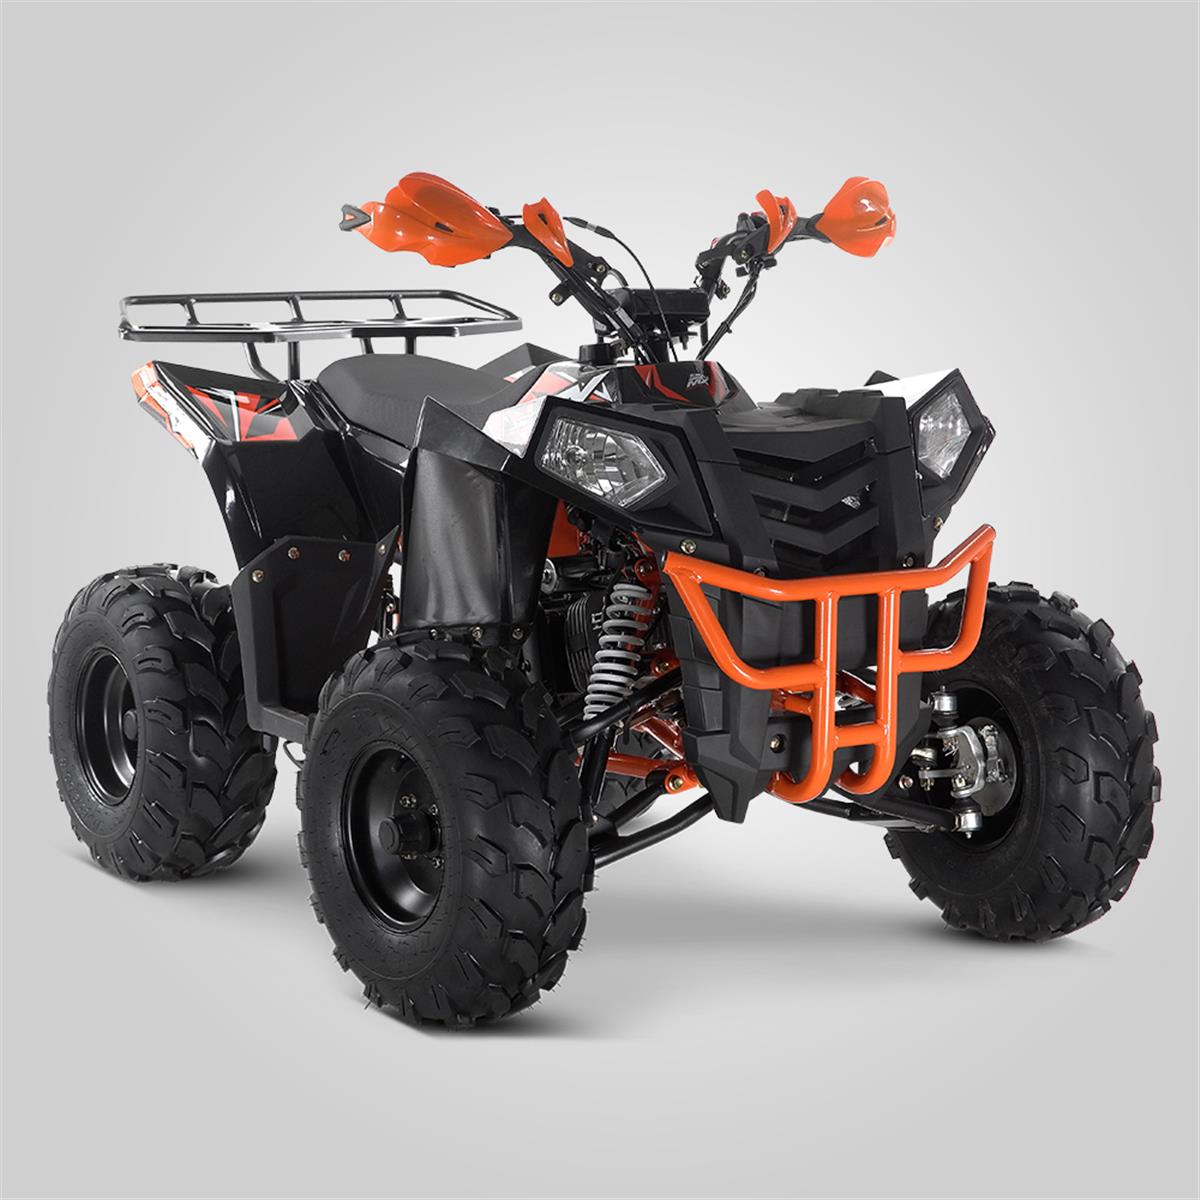 Kit déco Orange pour quad CRX 125cc | Smallmx - Dirt bike, Pit bike, Quads,  Minimoto